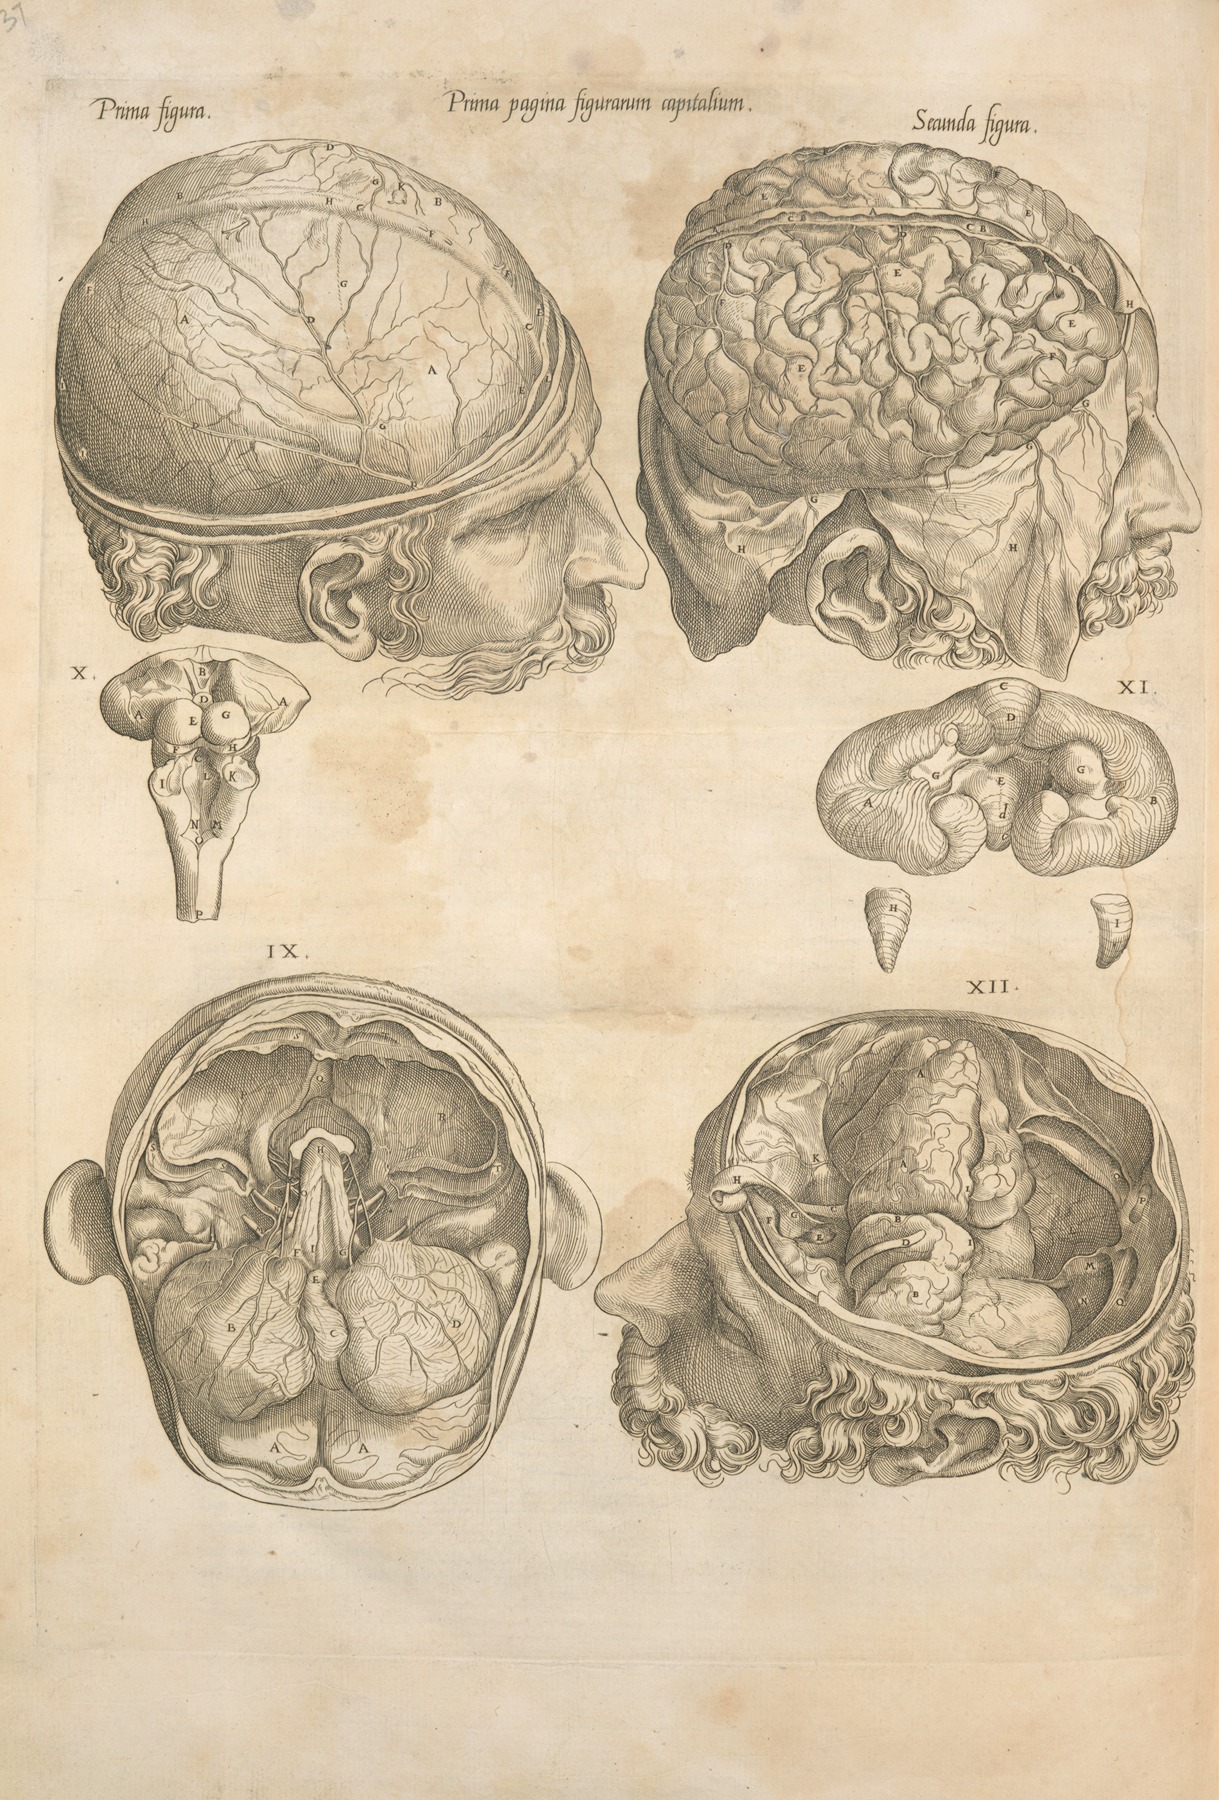 Thomas Geminus - Prima pagina figurarum capitalium [Human brain]